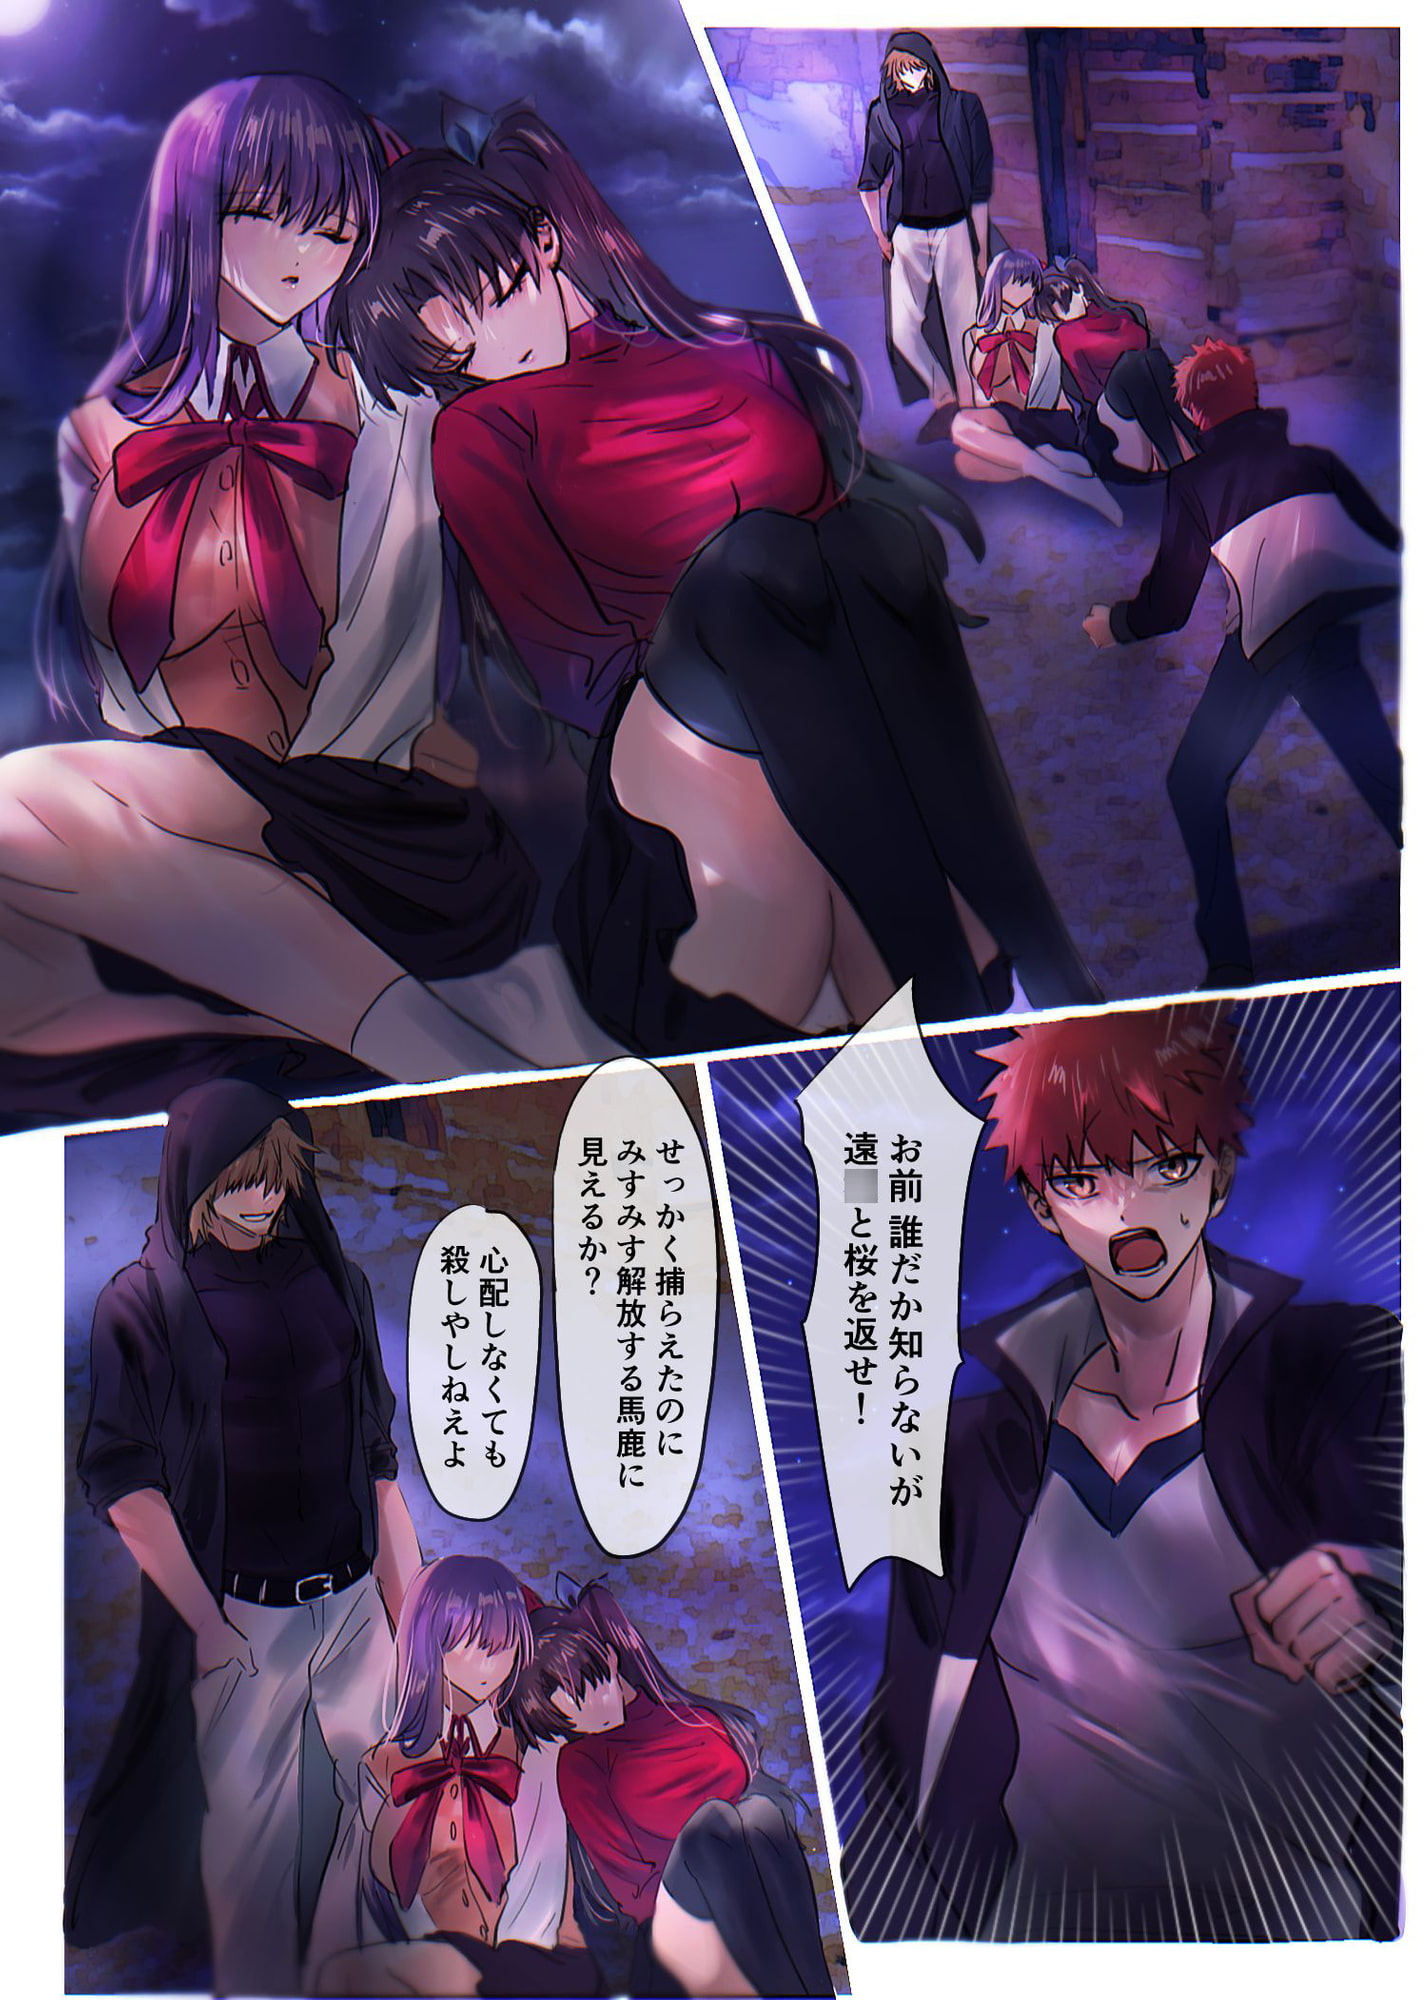 Fate/rewrite 〜凛と桜がサーヴァント化洗脳される本〜のサンプル画像1